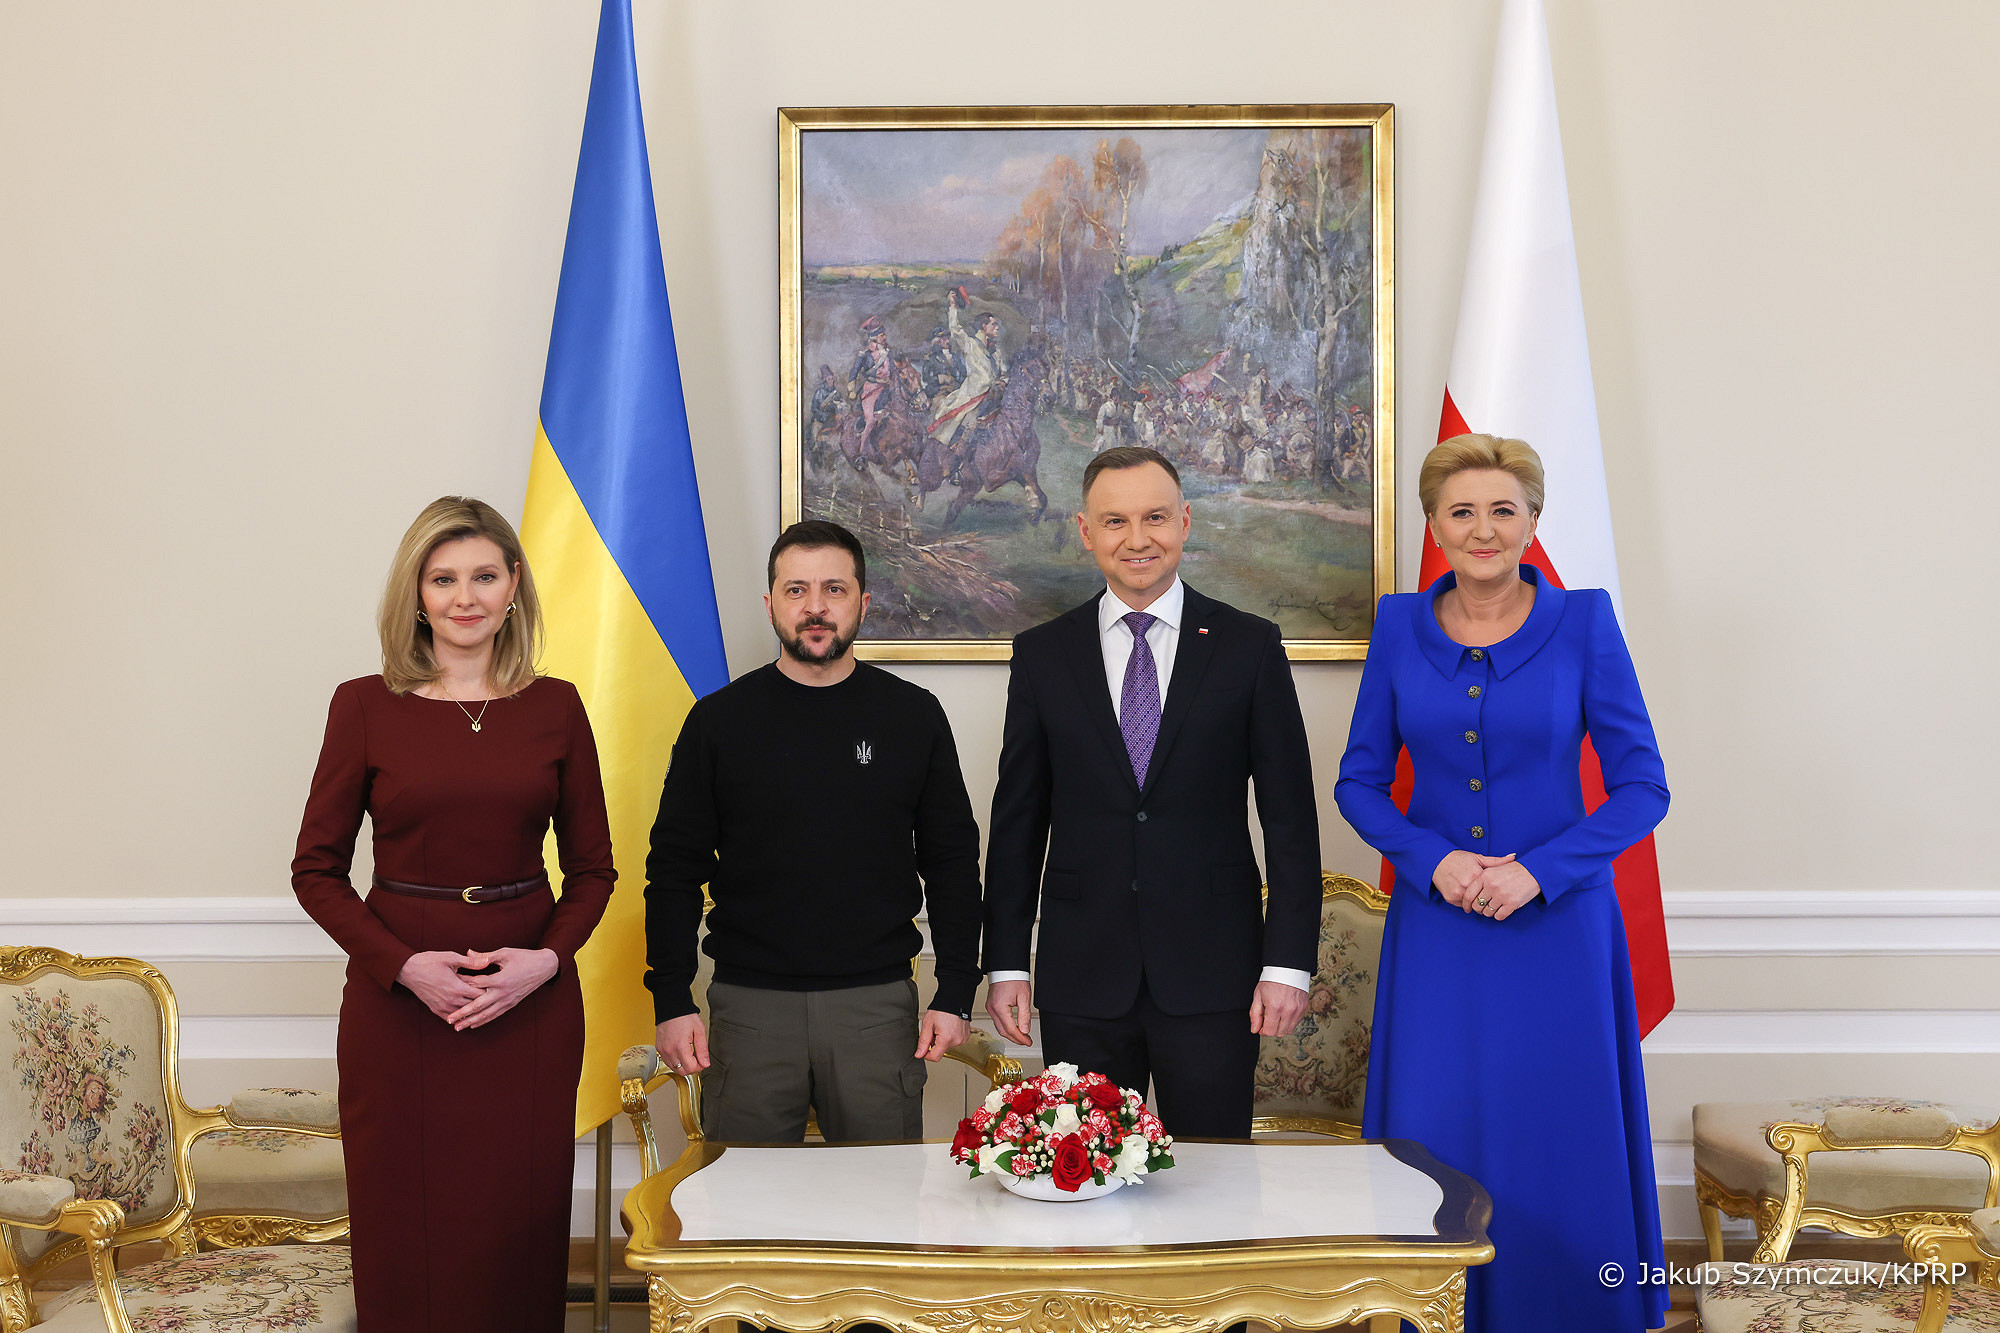 Frau Agata Kornhauser-Duda in einer De Marco-Kreation während des offiziellen Besuchs des ukrainischen Präsidenten in Polen